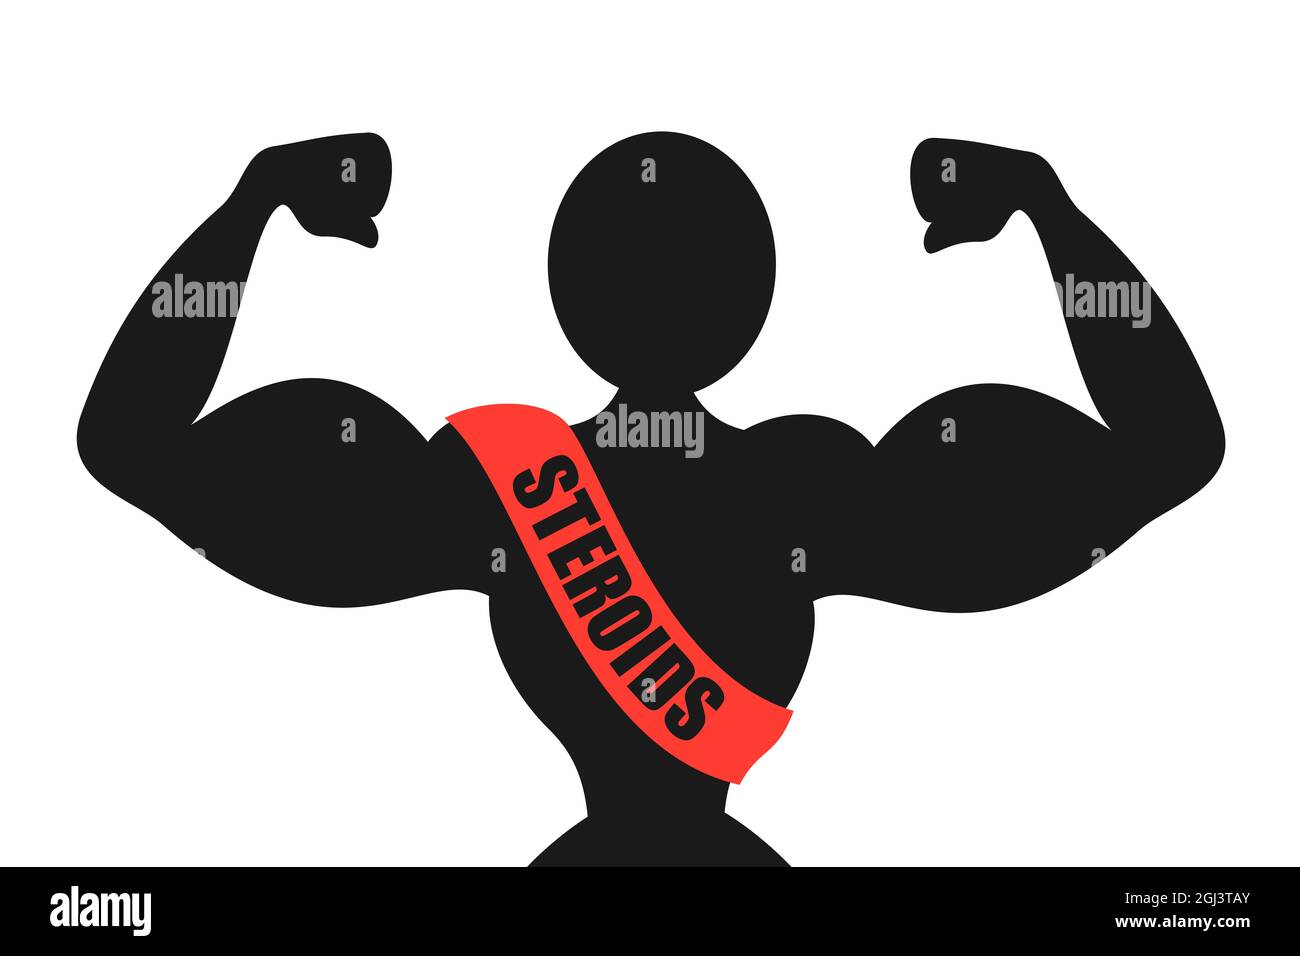 Segreti per steroidi per la forza – Anche in questa economia al ribasso